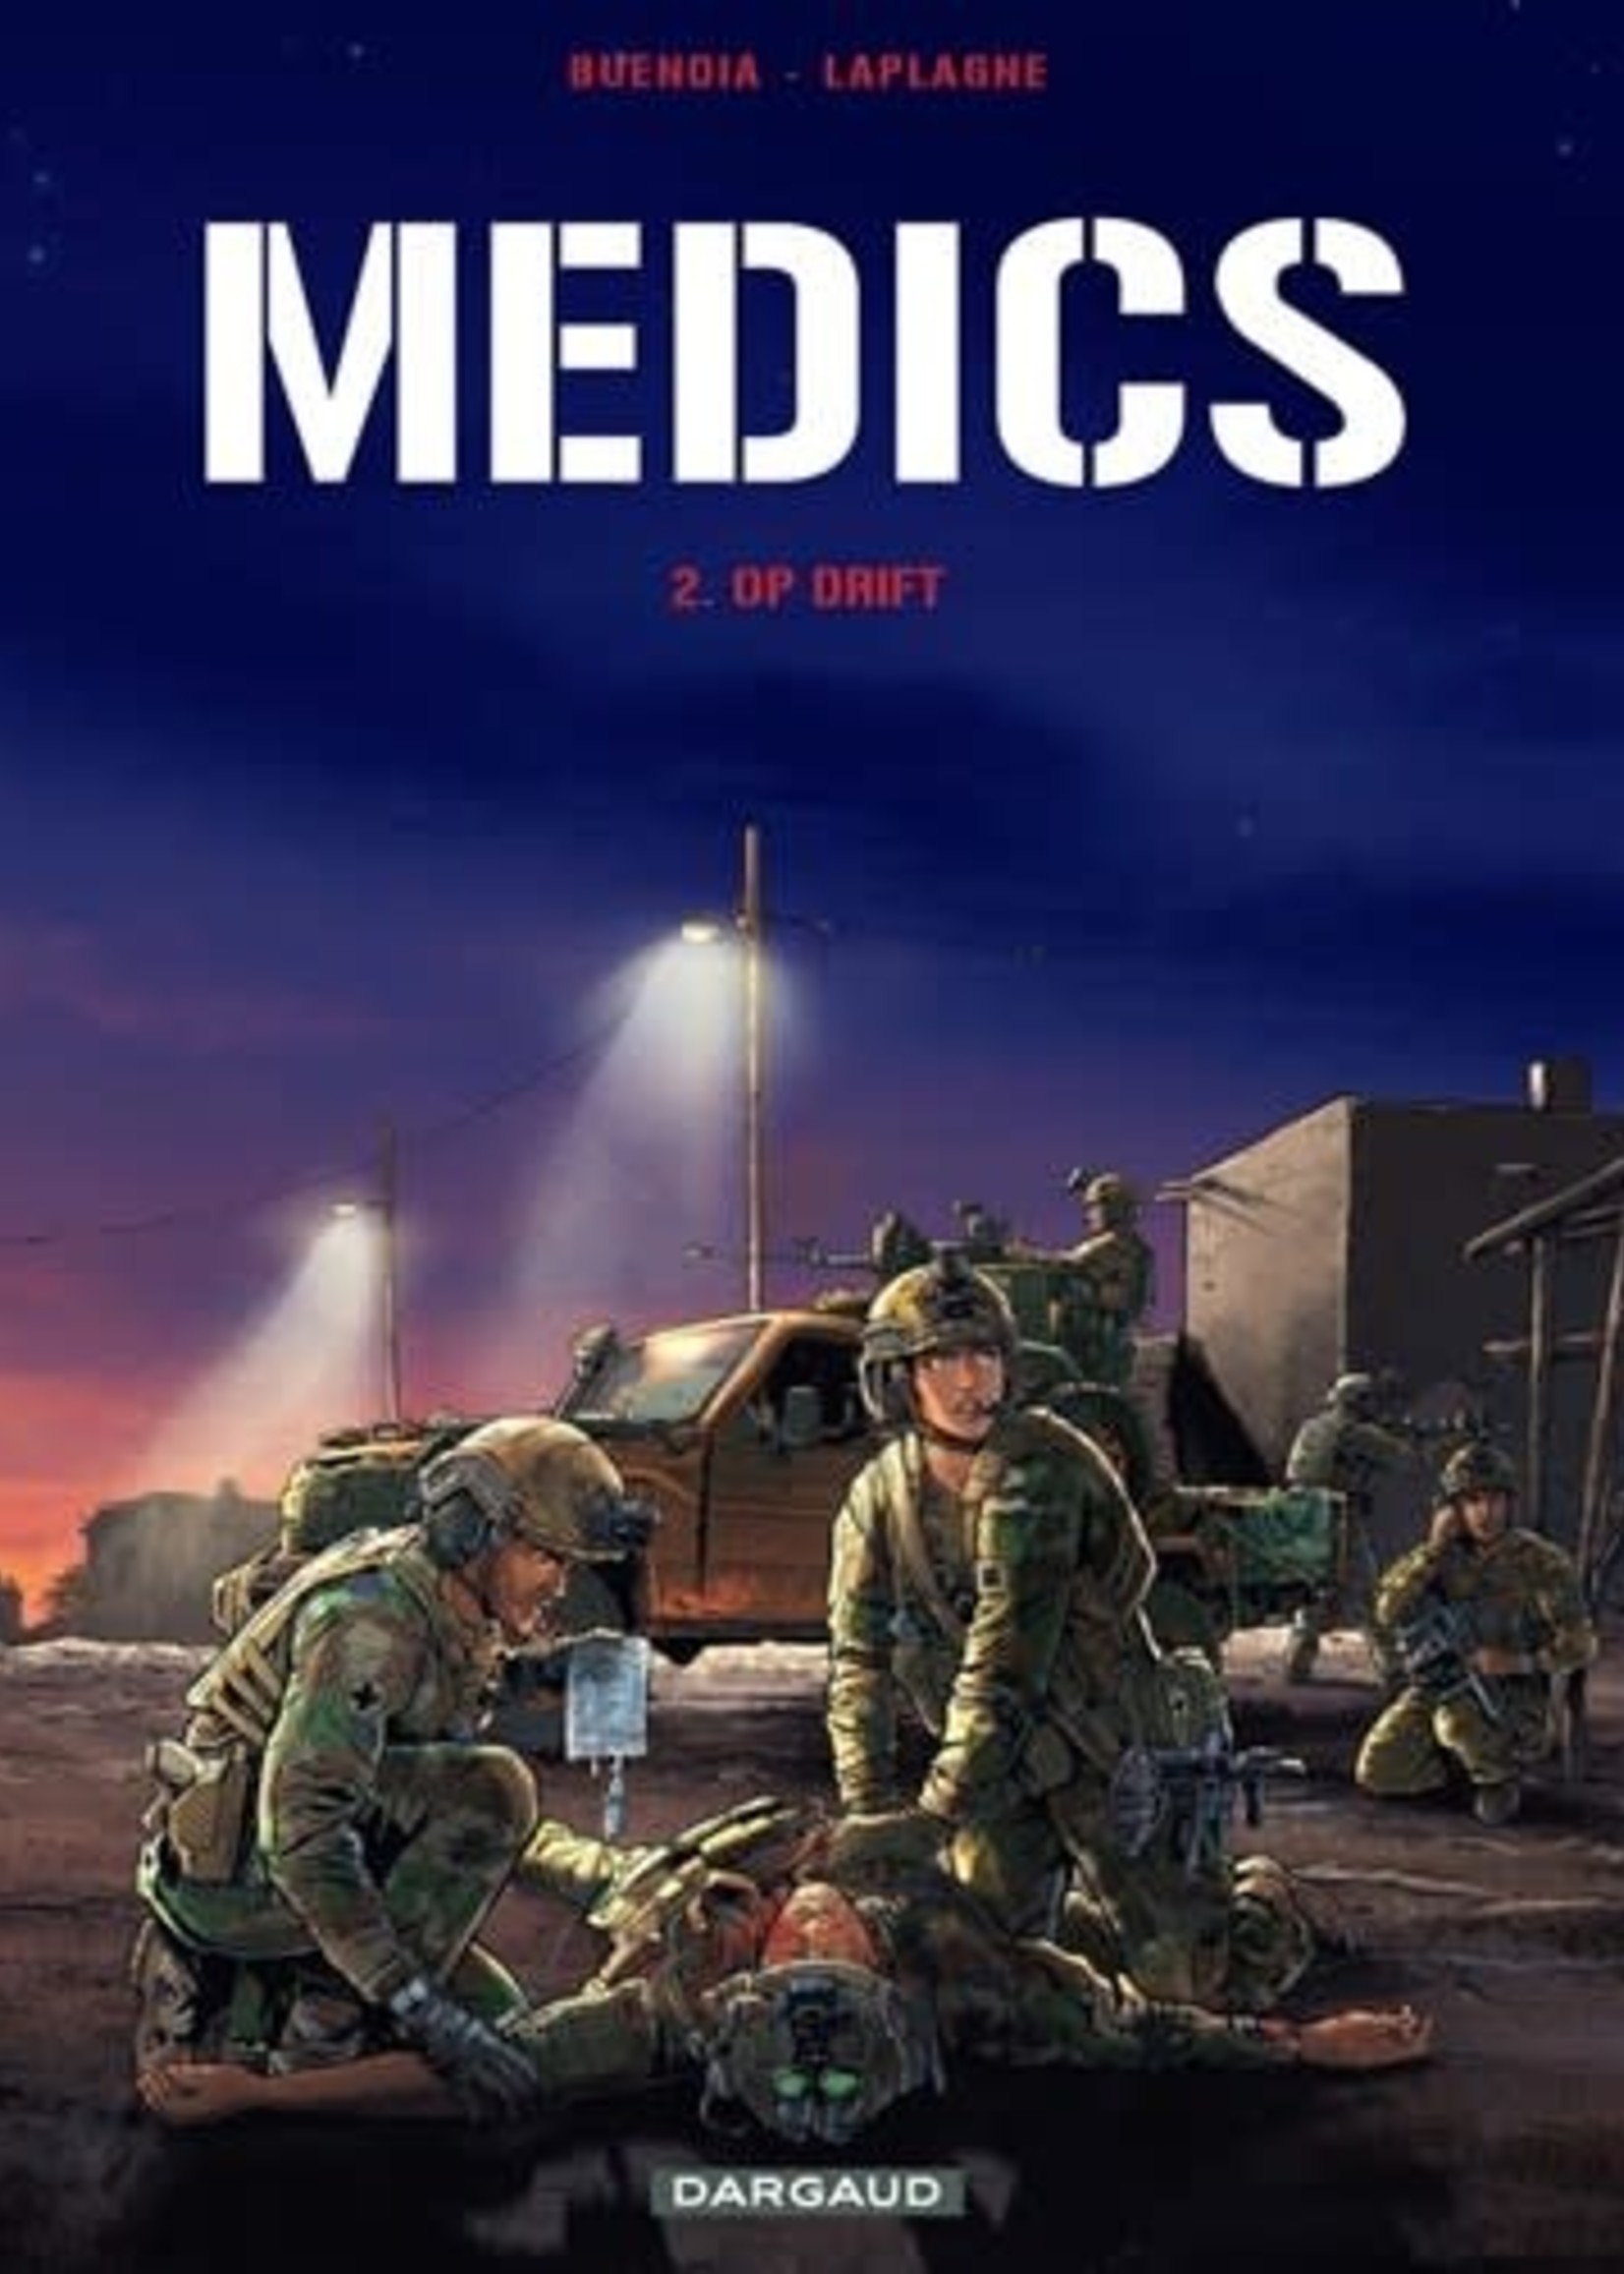 Dargaud Medics 02 Op drift HC